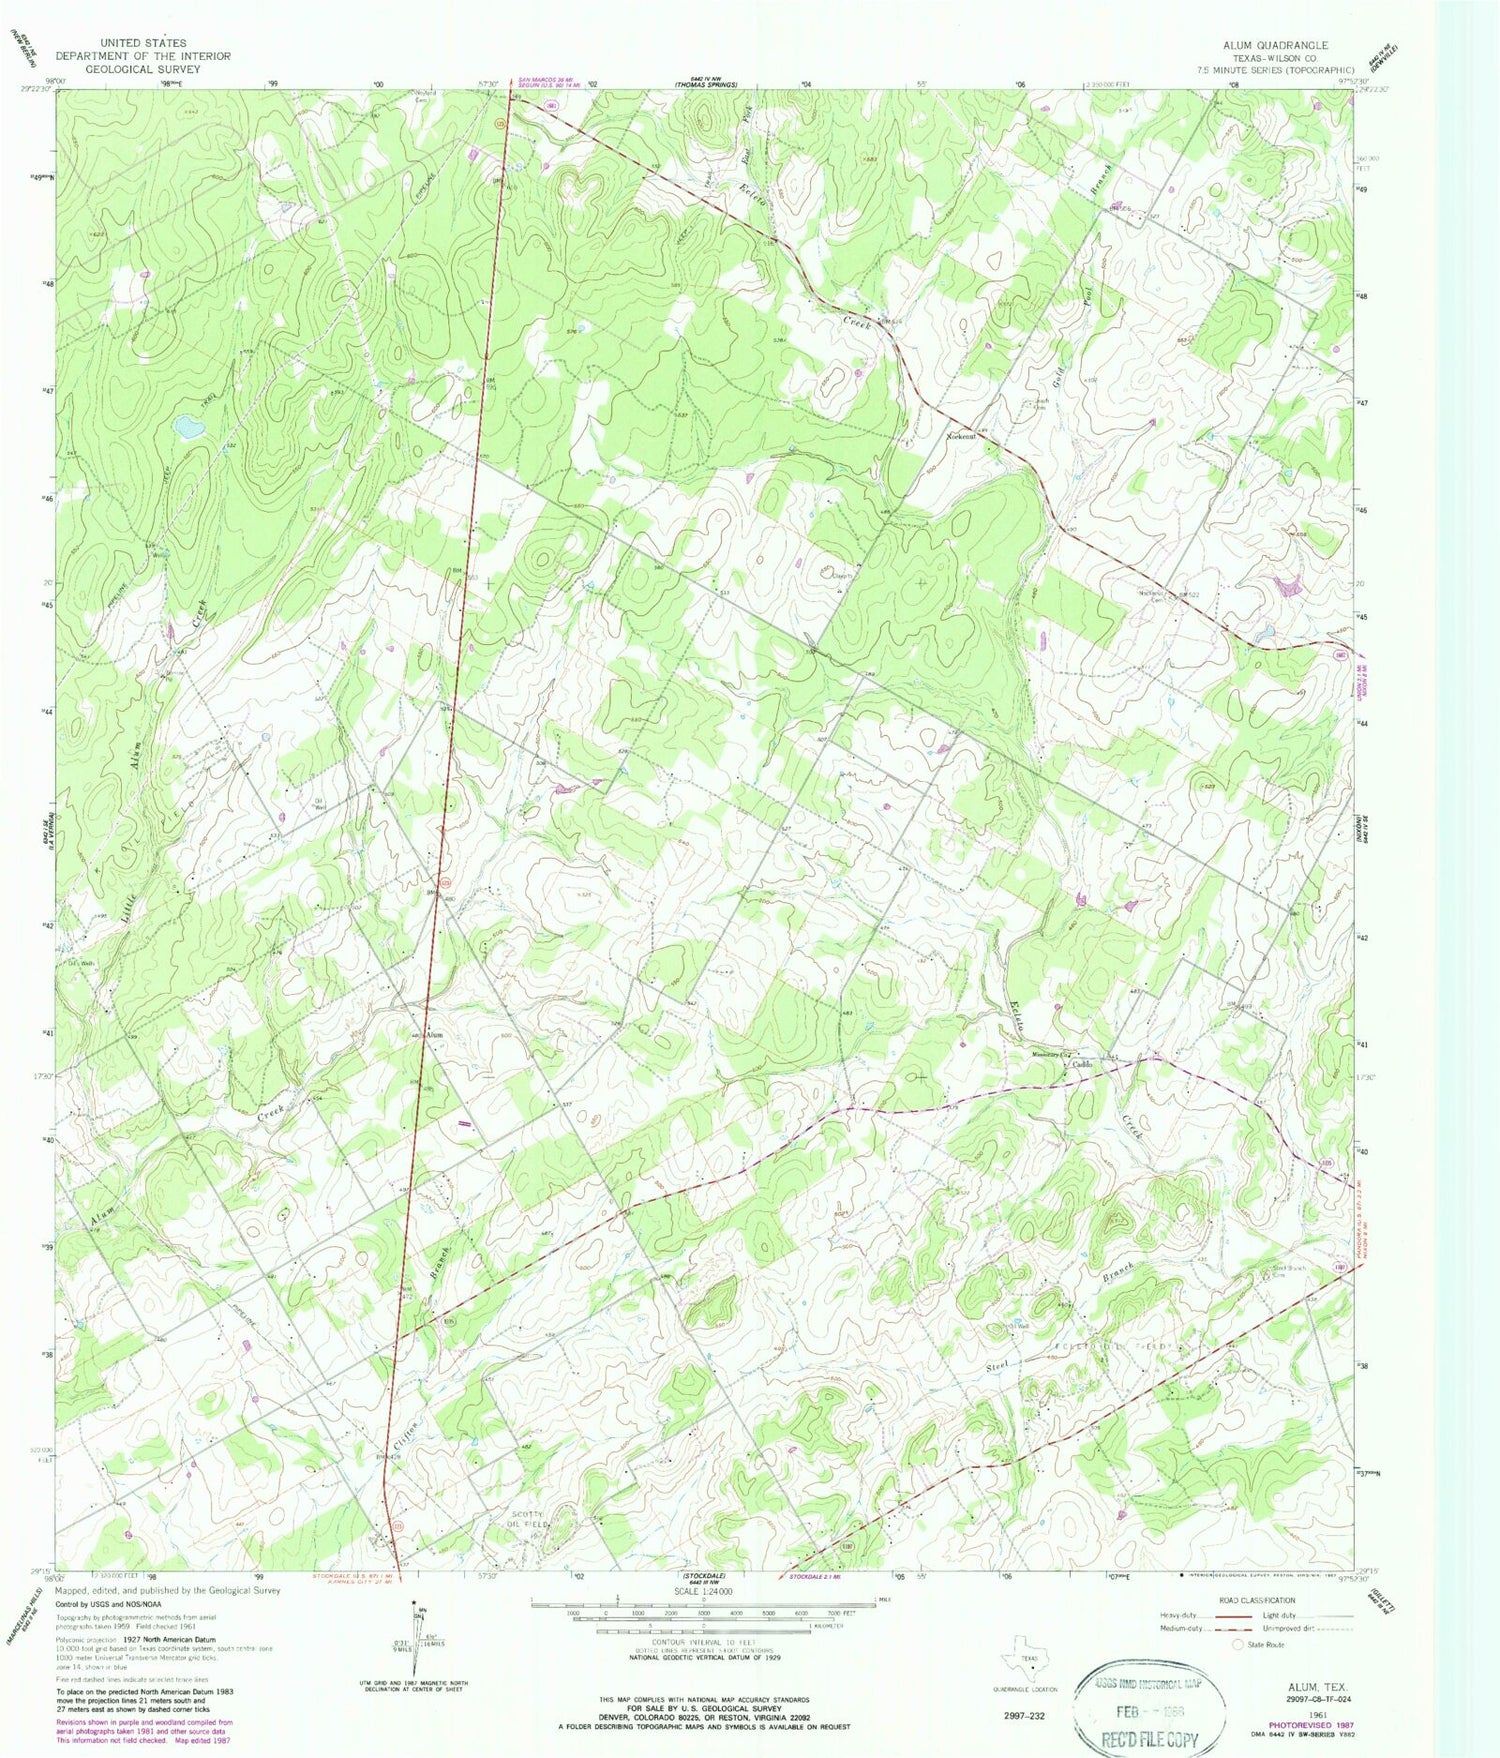 Classic USGS Alum Texas 7.5'x7.5' Topo Map Image